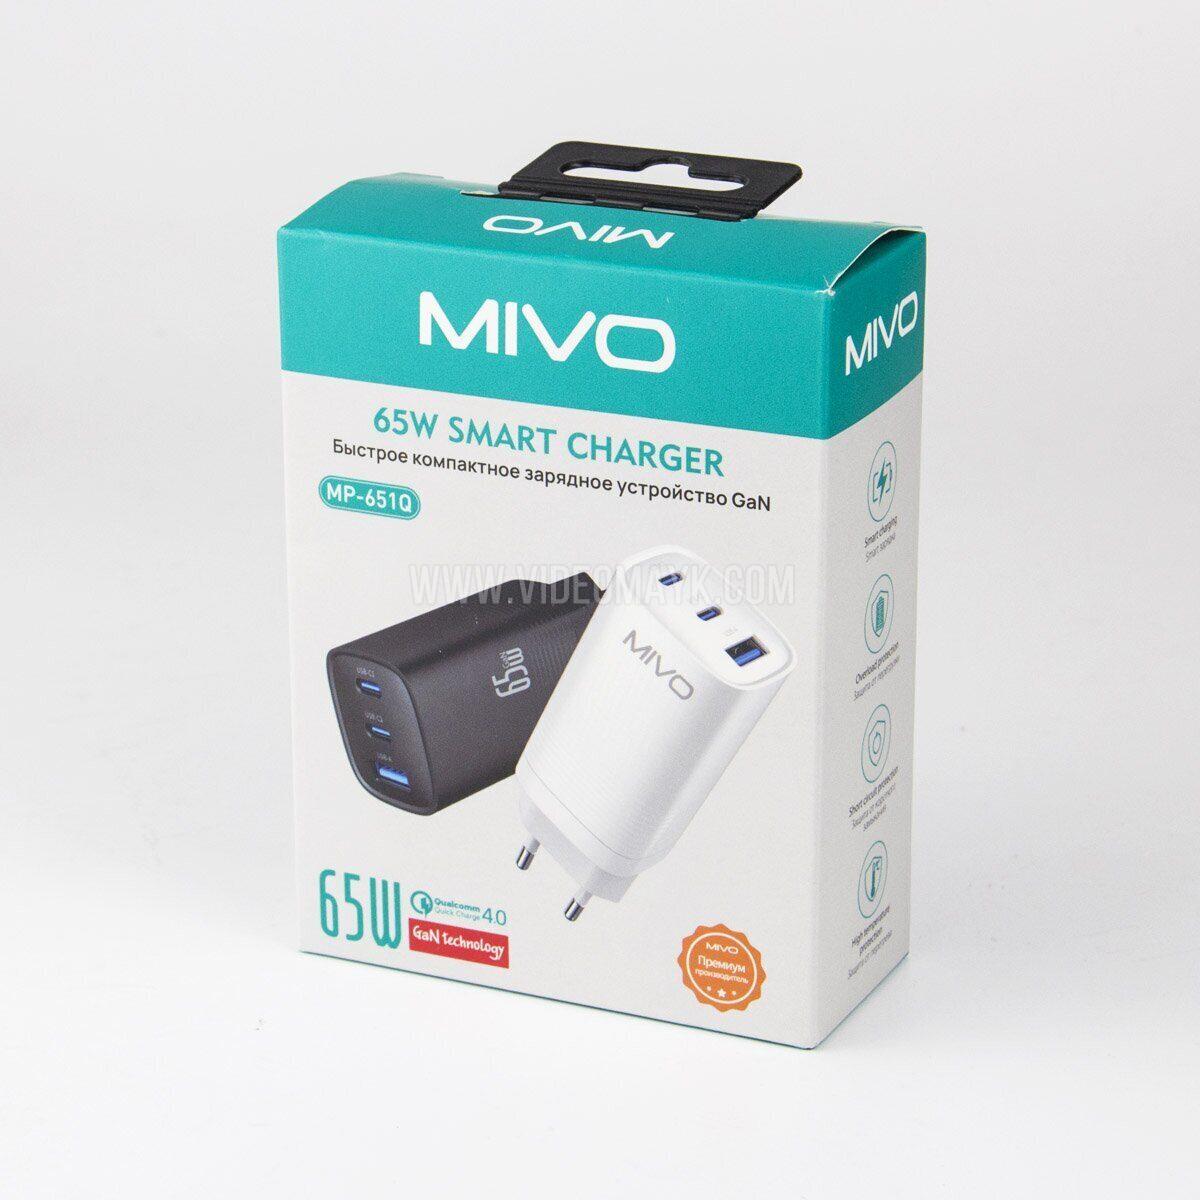 Быстрое компактное зарядное GAN устройство Mivo MP-651Q, QC 4.0-65W